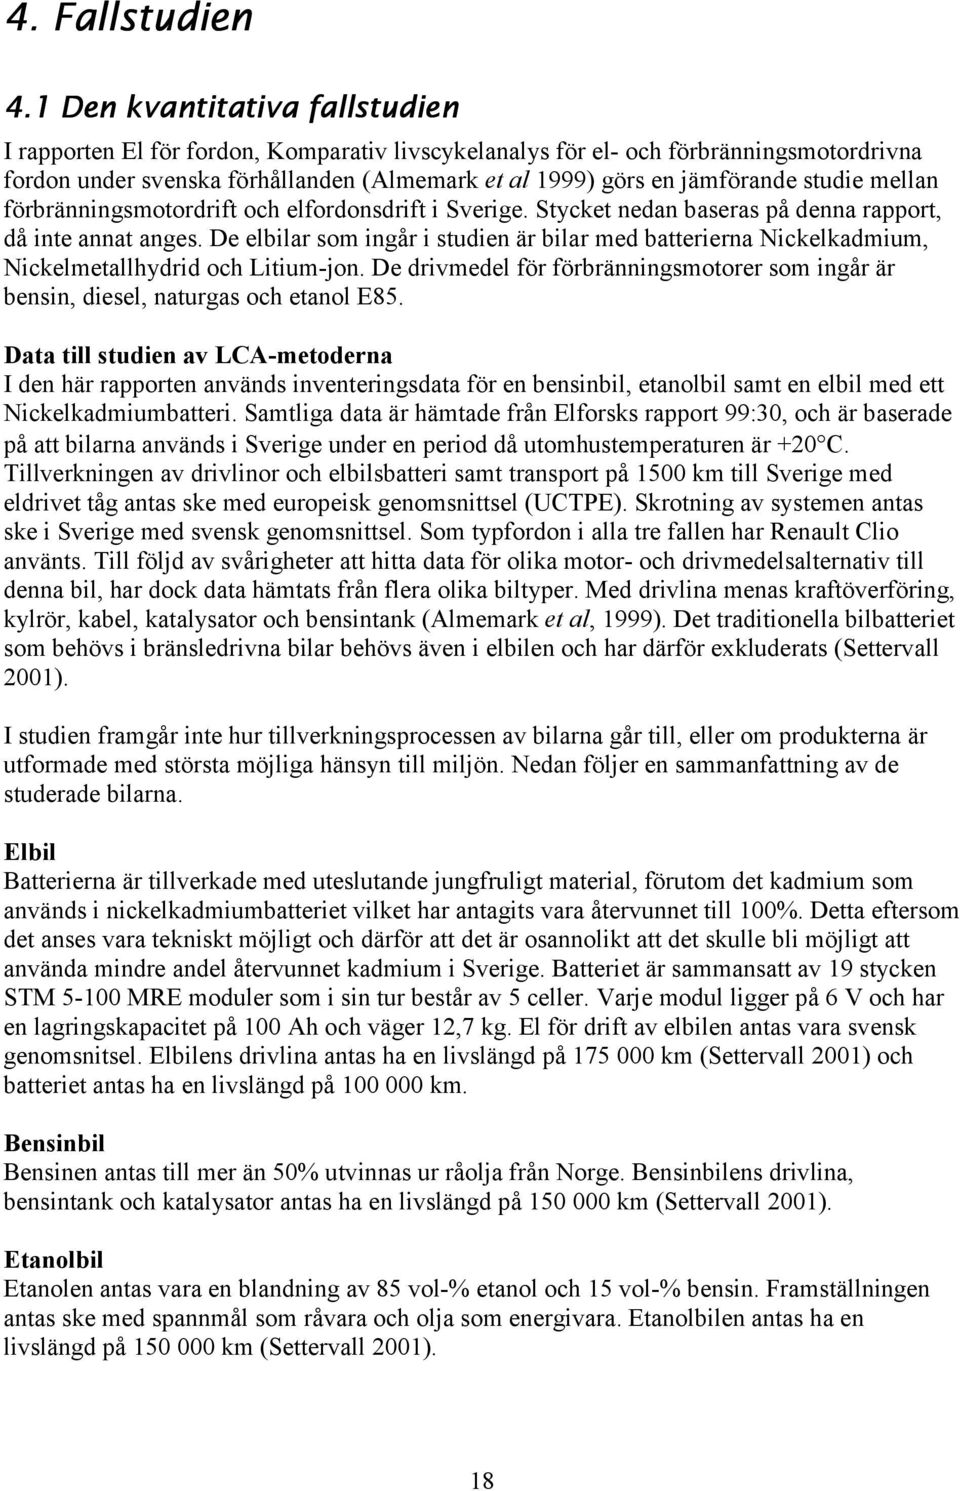 studie mellan förbränningsmotordrift och elfordonsdrift i Sverige. Stycket nedan baseras på denna rapport, då inte annat anges.